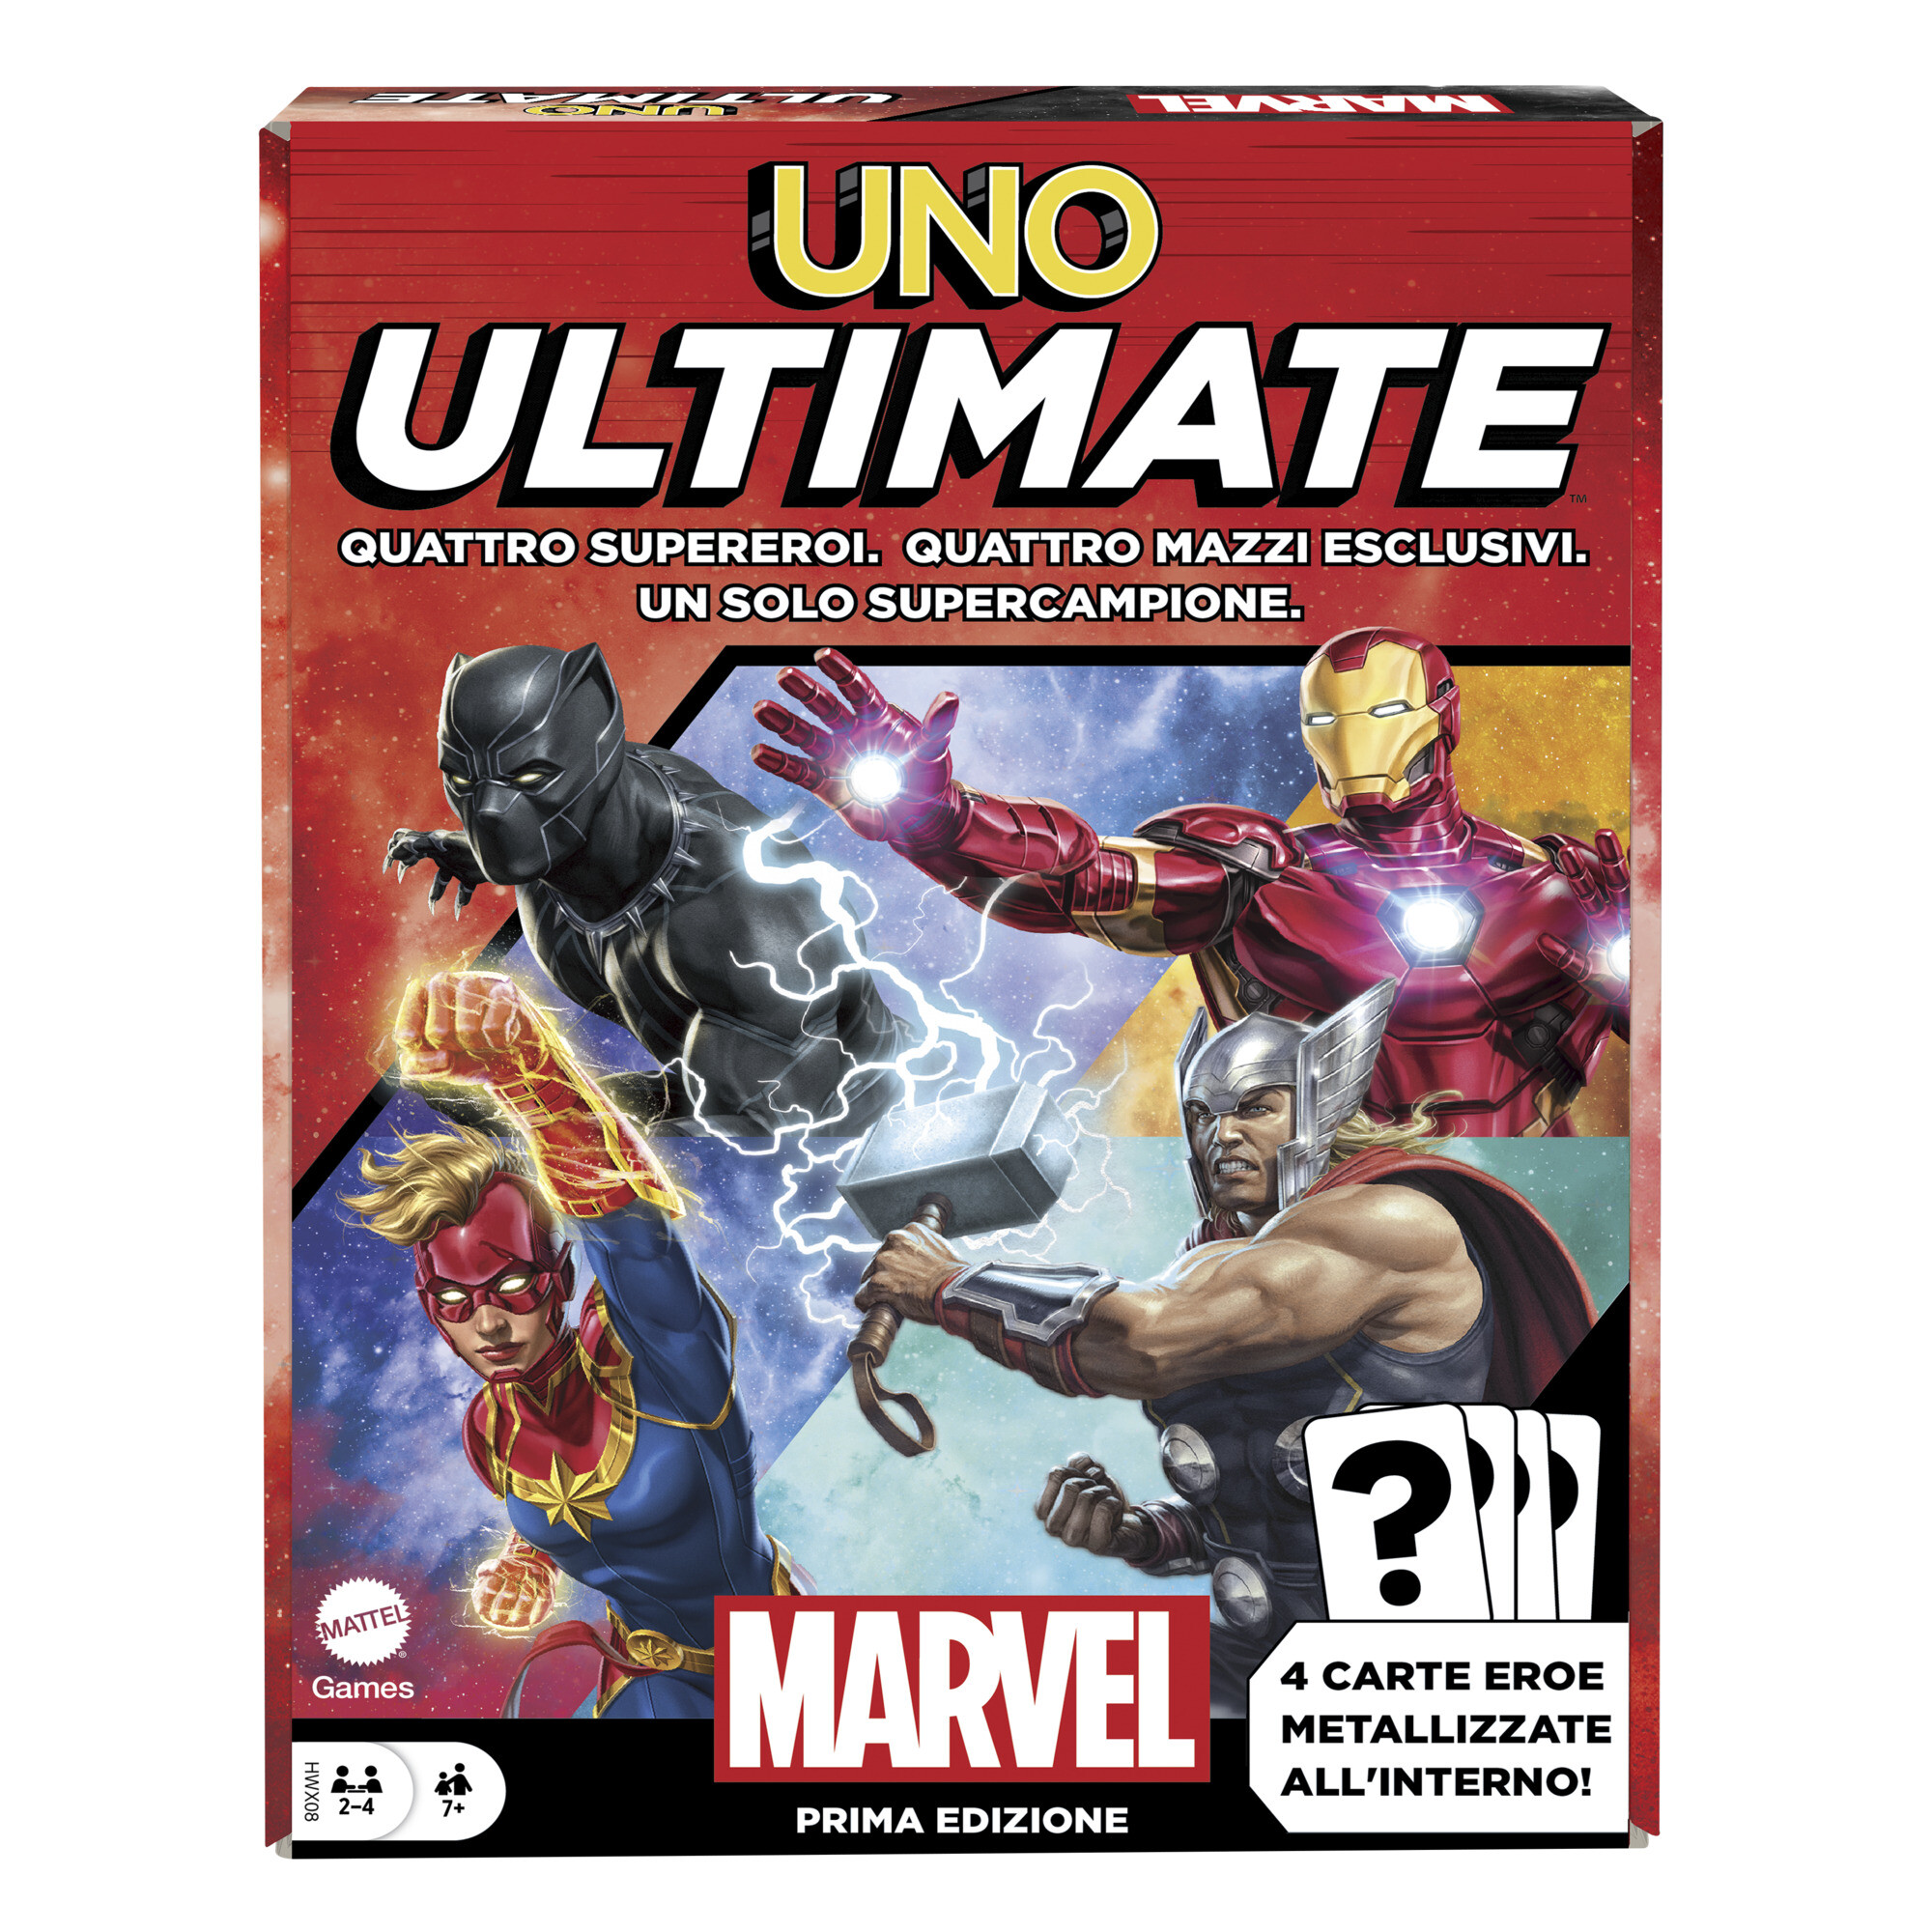 Uno ultimate, l'iconico gioco di carte con i supereroi marvel - UNO